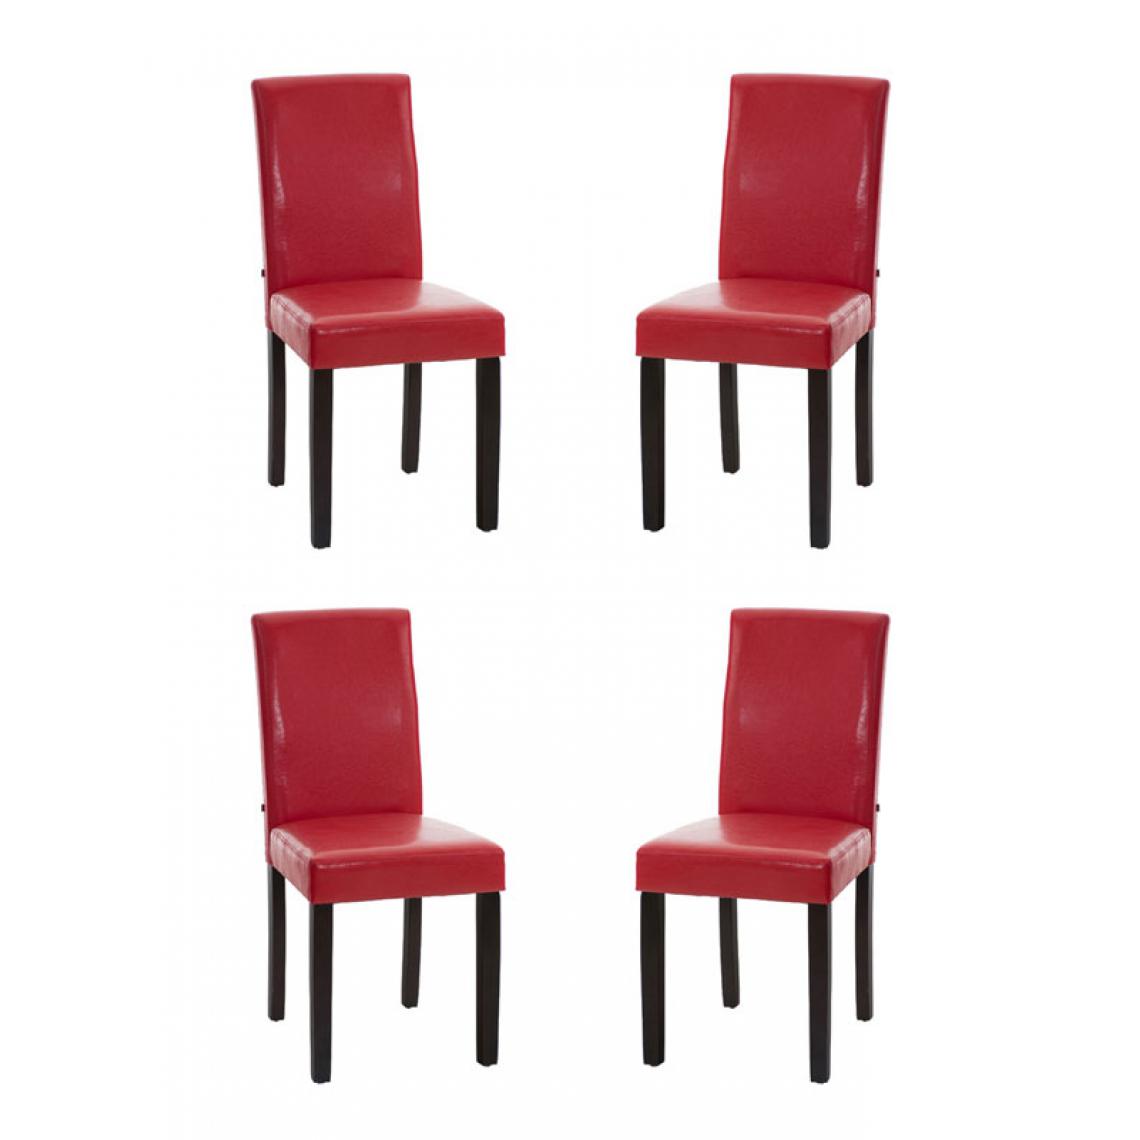 Icaverne - Inedit Lot de 4 chaises de salle à manger selection Rabat marron foncé couleur rouge - Chaises